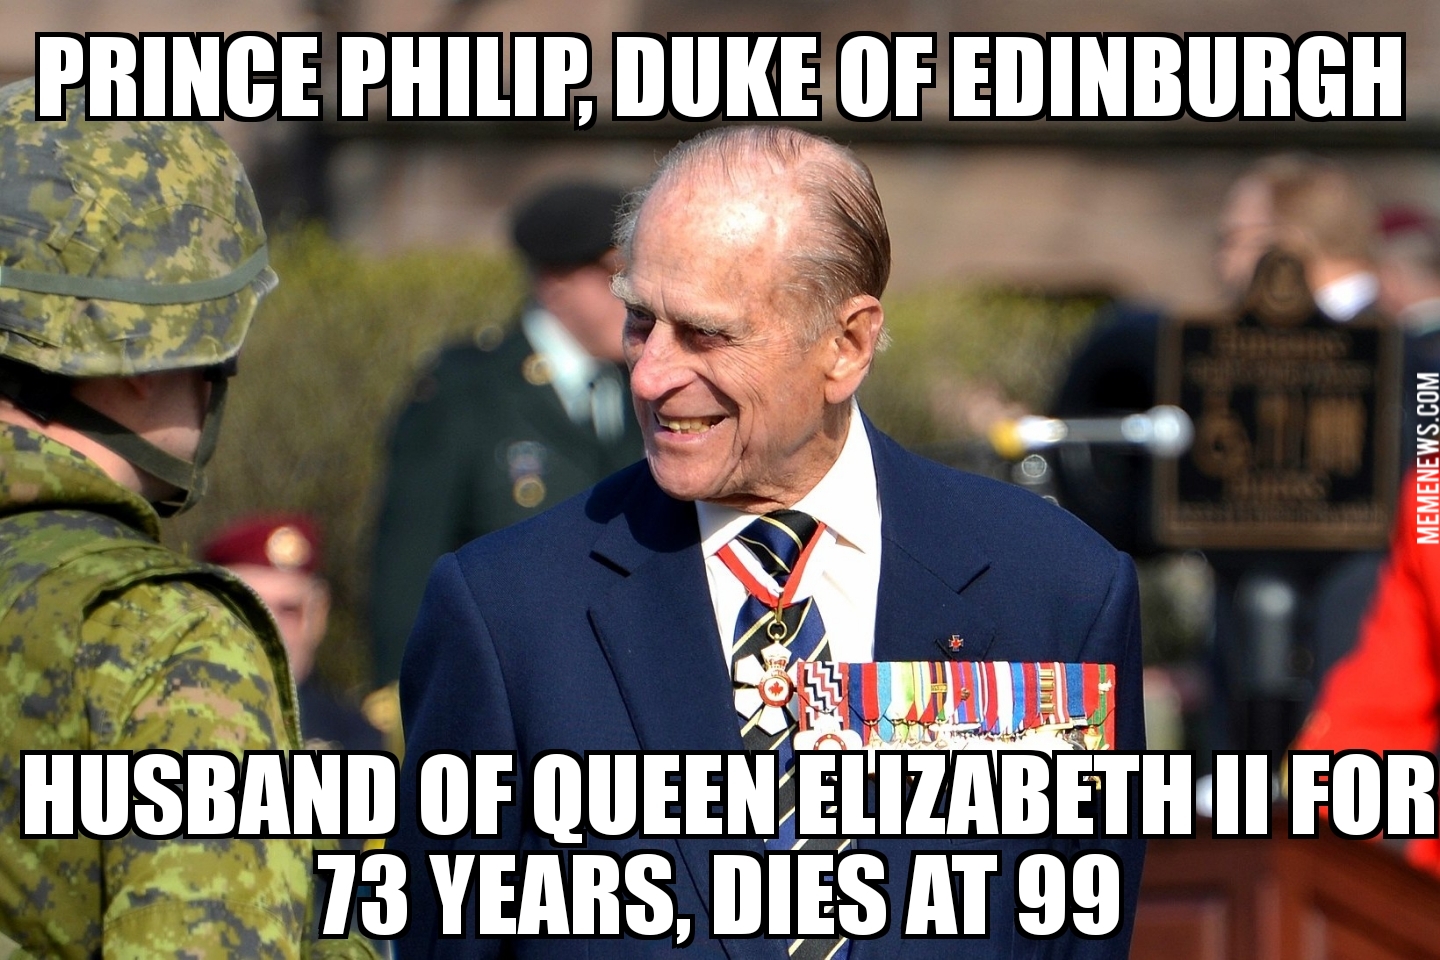 Prince Philip dies